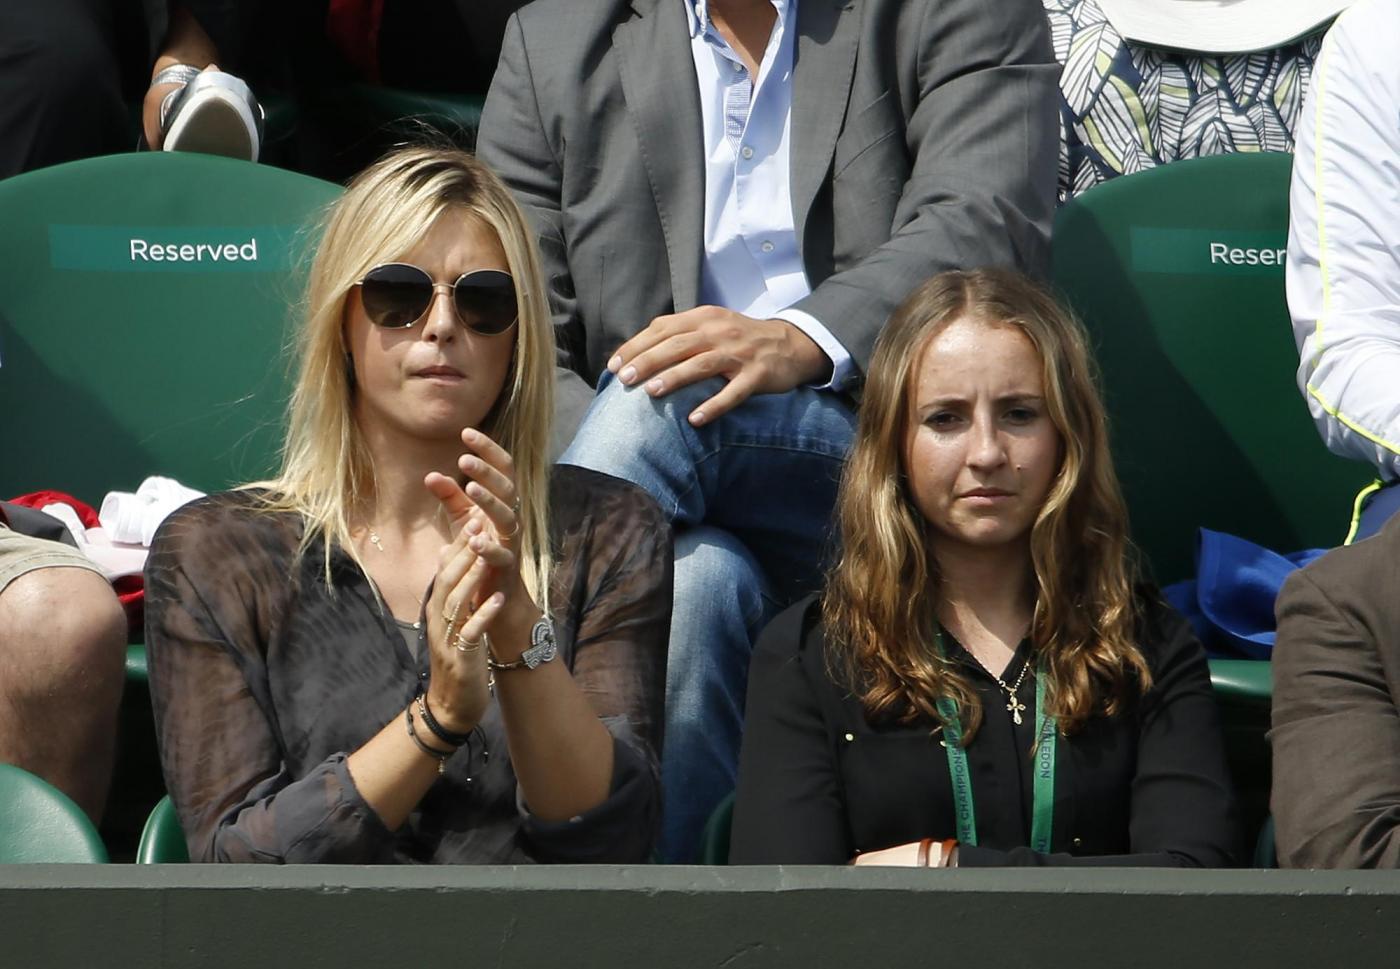 Maria Sharapova innamorata sugli spalti di Wimbledon01